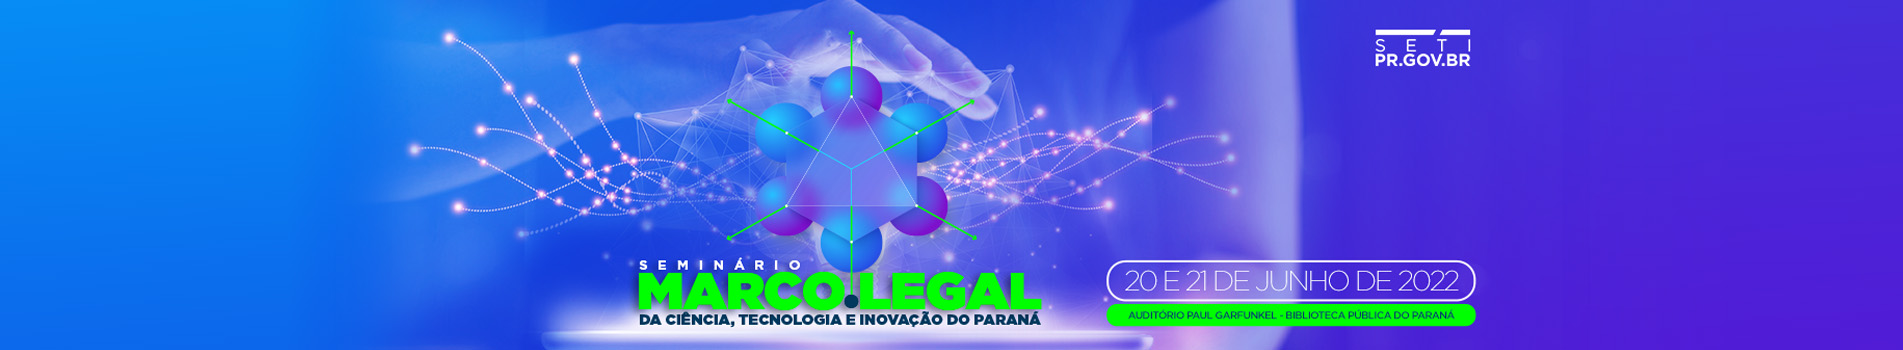 Seminário Marco Legal da Ciência, Tecnologia e Inovação do Paraná